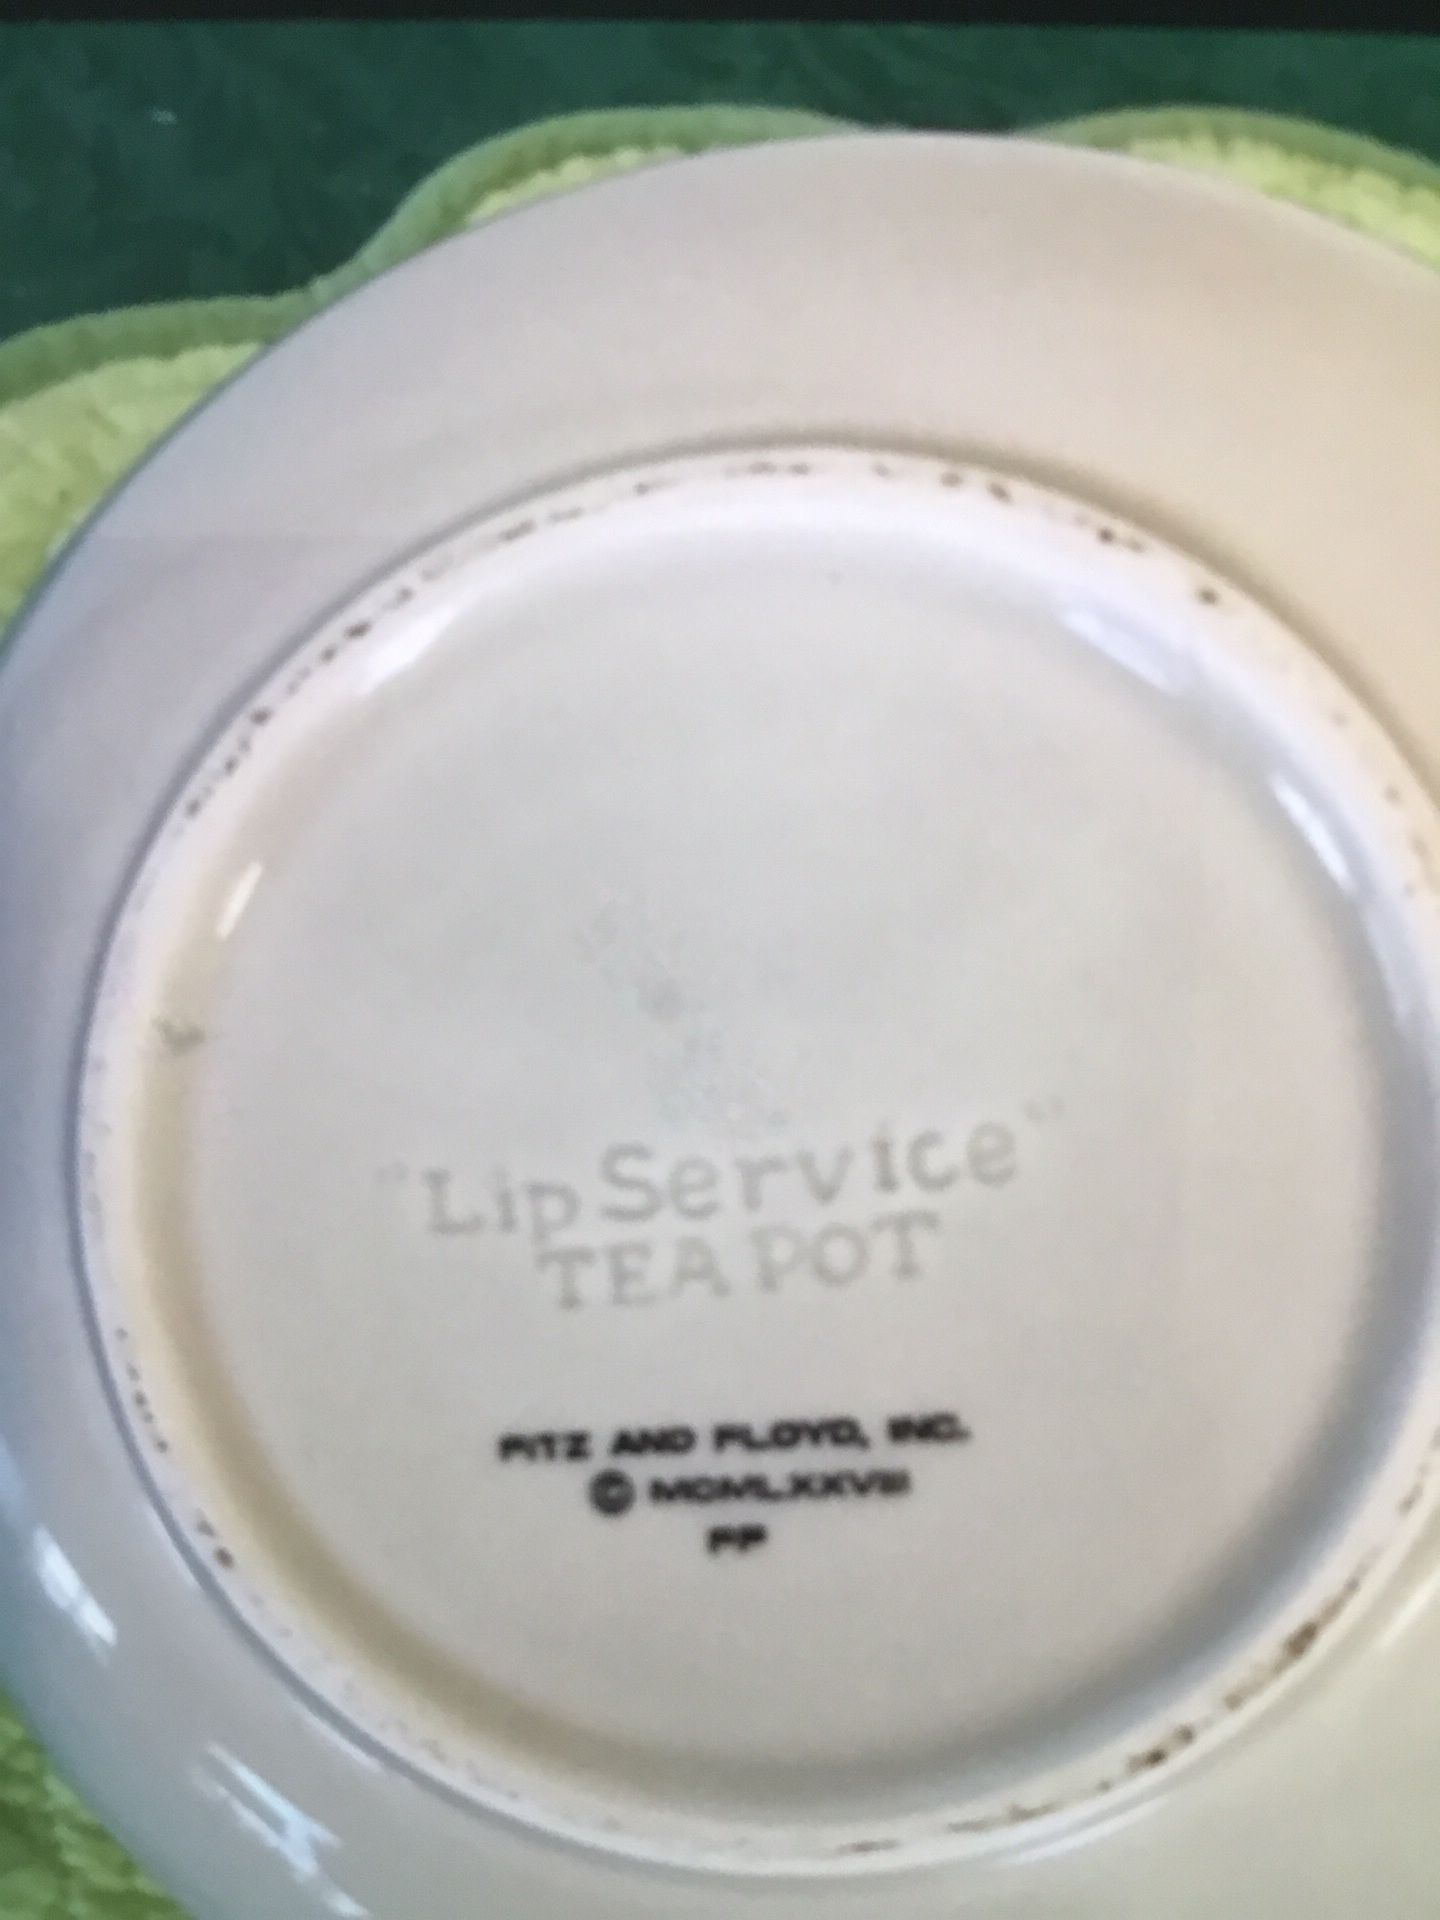 Fitz & Floyd Lip Service Teapot Marilyn Monroe Red Lips & Beauty mark  1977